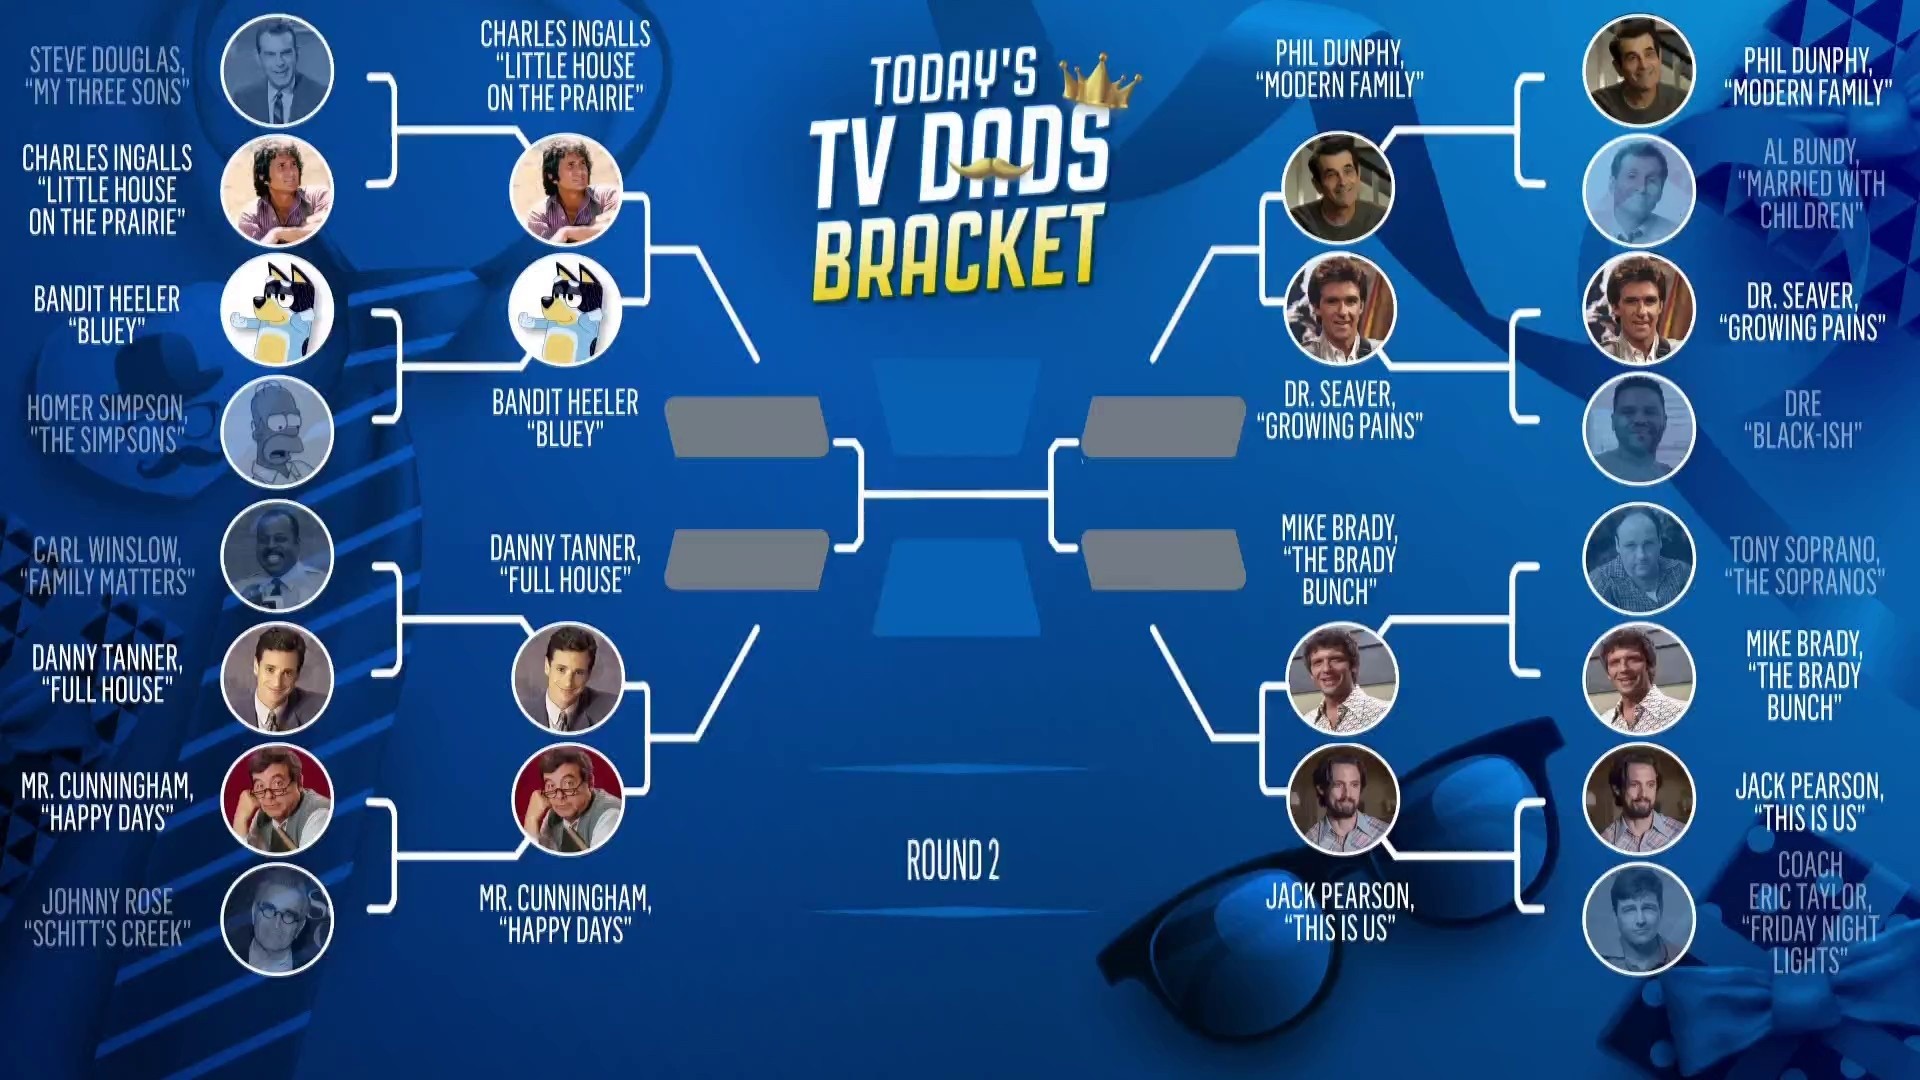 Mike Brady tops Tony Soprano in TODAY's TV Dad bracket round 1